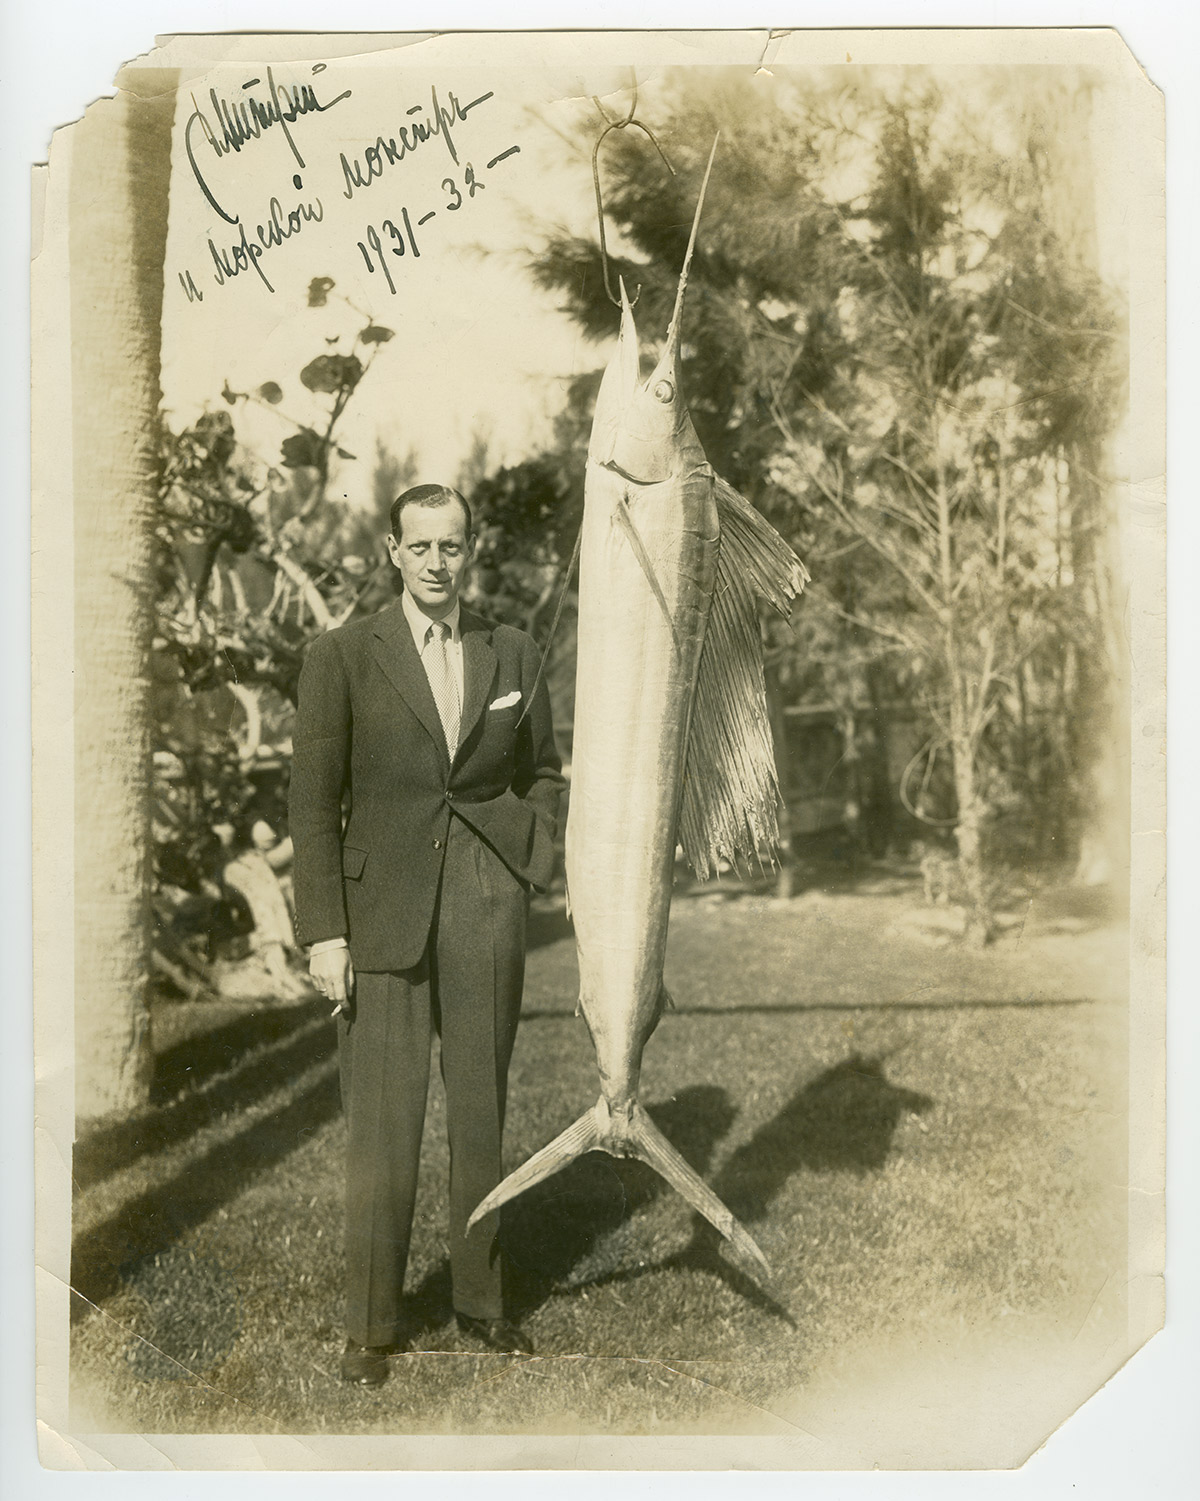 Dimitri et le poisson qu’il a pêché. La photo a été publiée dans plusieurs journaux américains. \ États-Unis, 1931-1932.